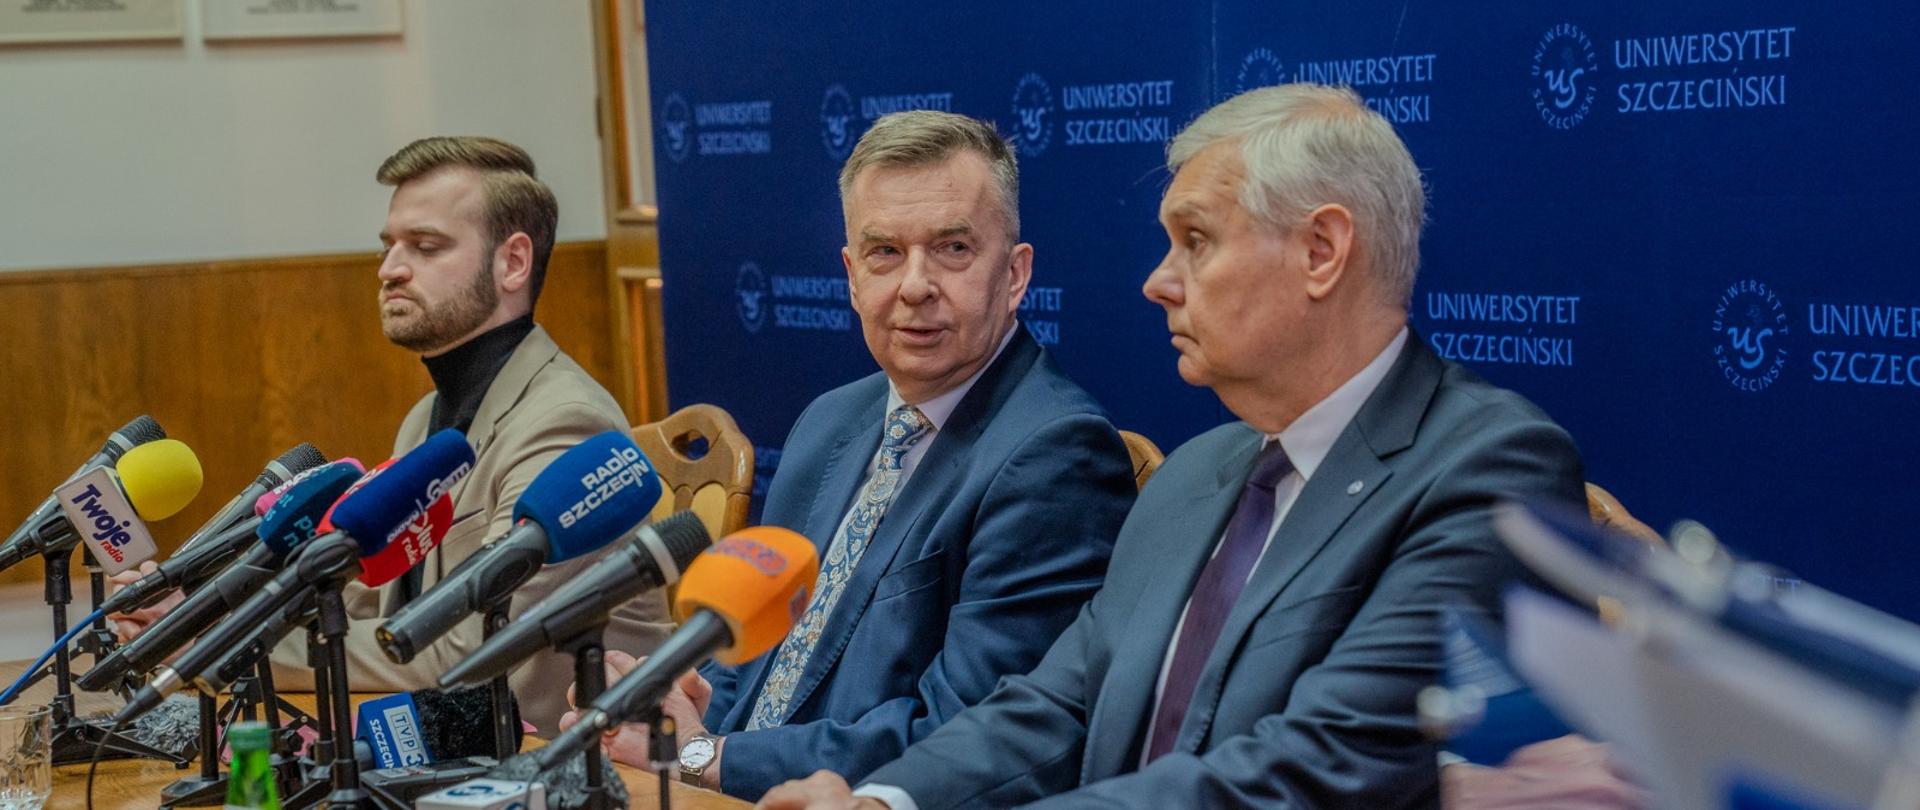 Minister Wieczorek i dwóch mężczyzn w garniturach siedzą za drewnianym stołem, za nimi niebieska ścianka z napisem Uniwersytet Szczeciński.